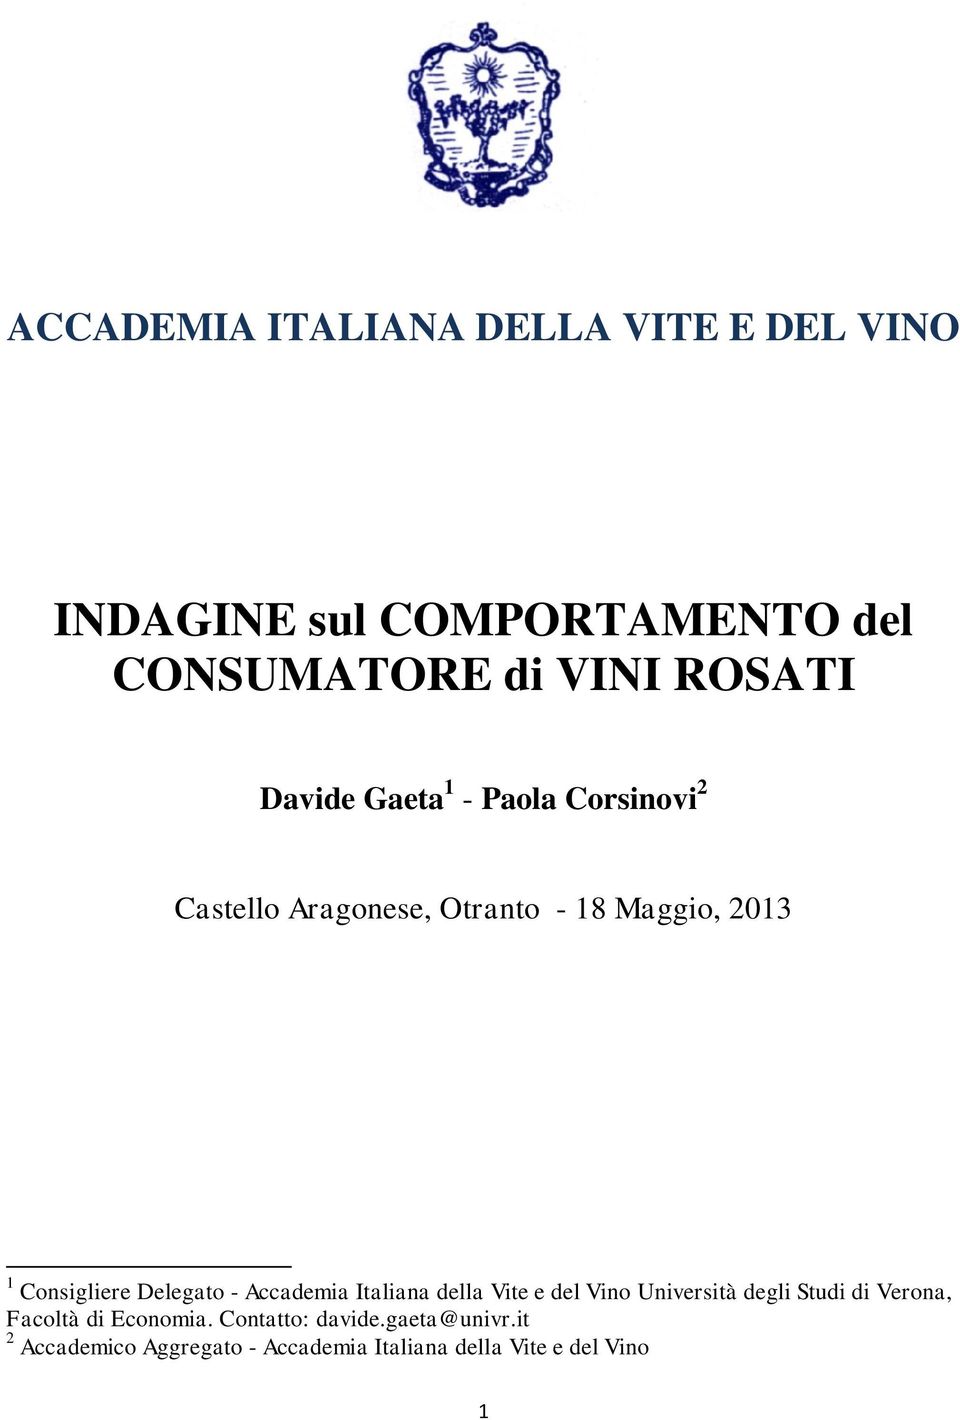 Delegato - Accademia Italiana della Vite e del Vino Università degli Studi di Verona, Facoltà di